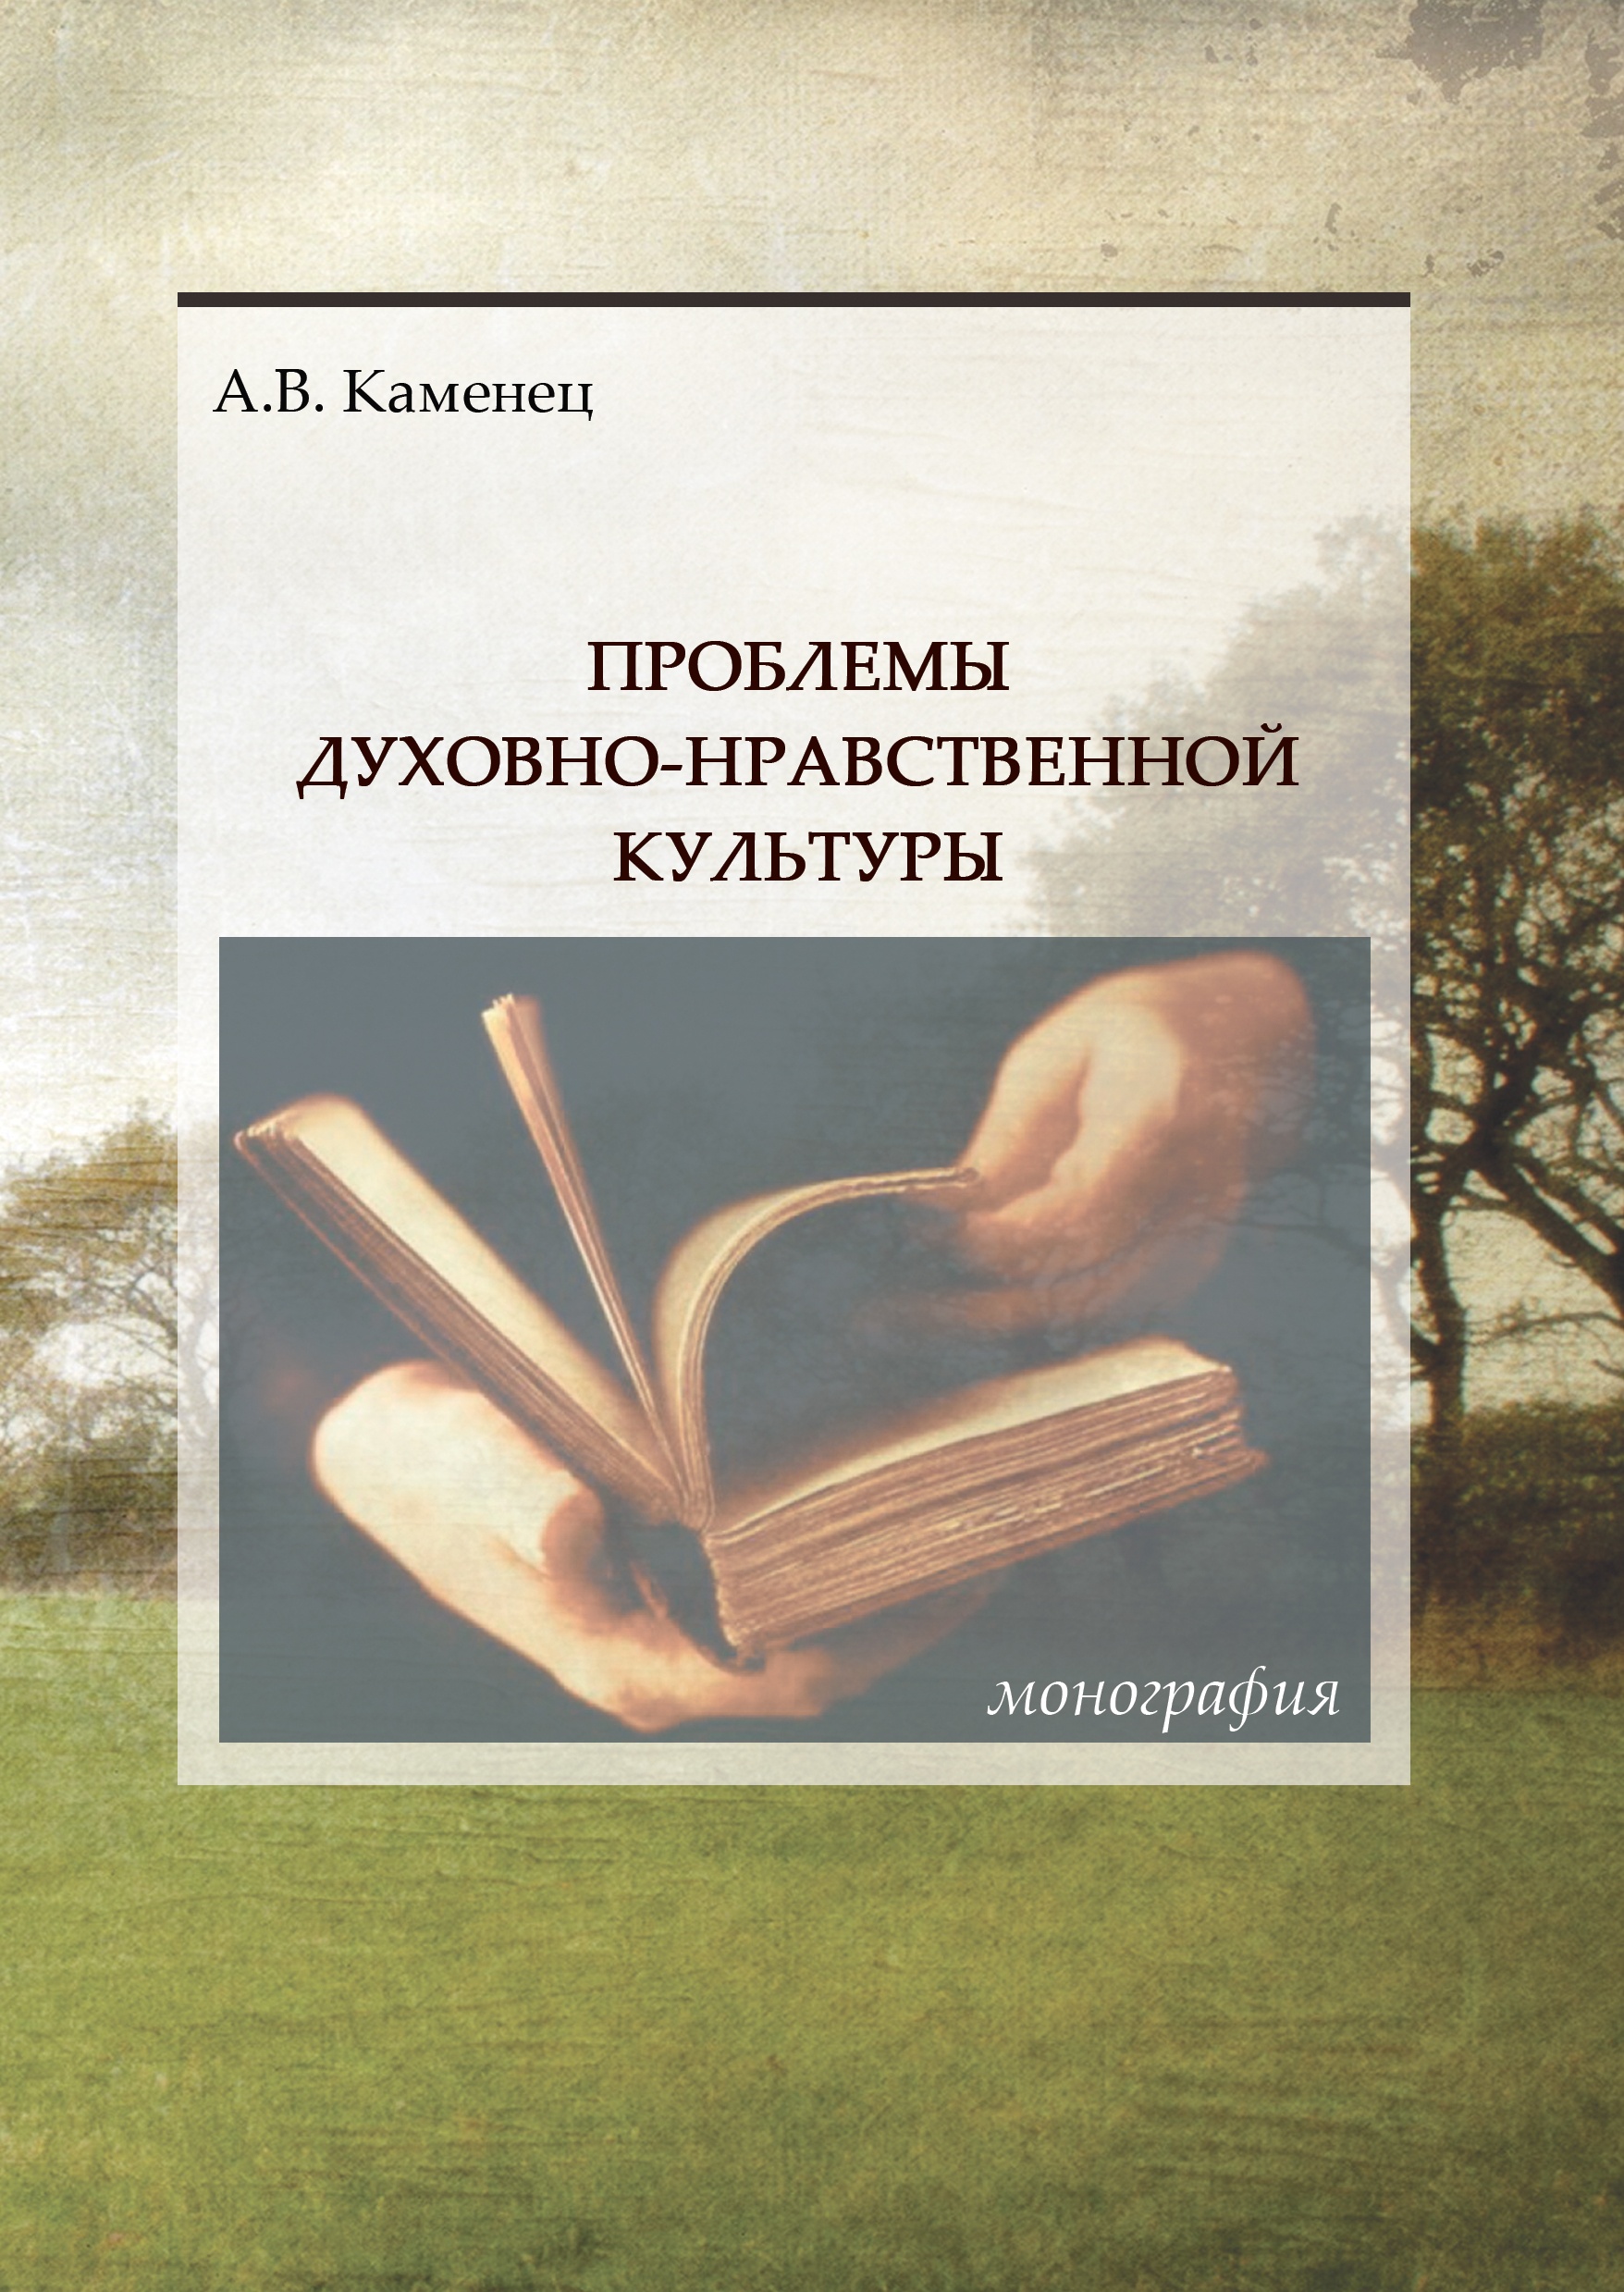 Сочинение: Избранные произведения А.С. Пушкина в аспекте его духовно-нравственного опыта